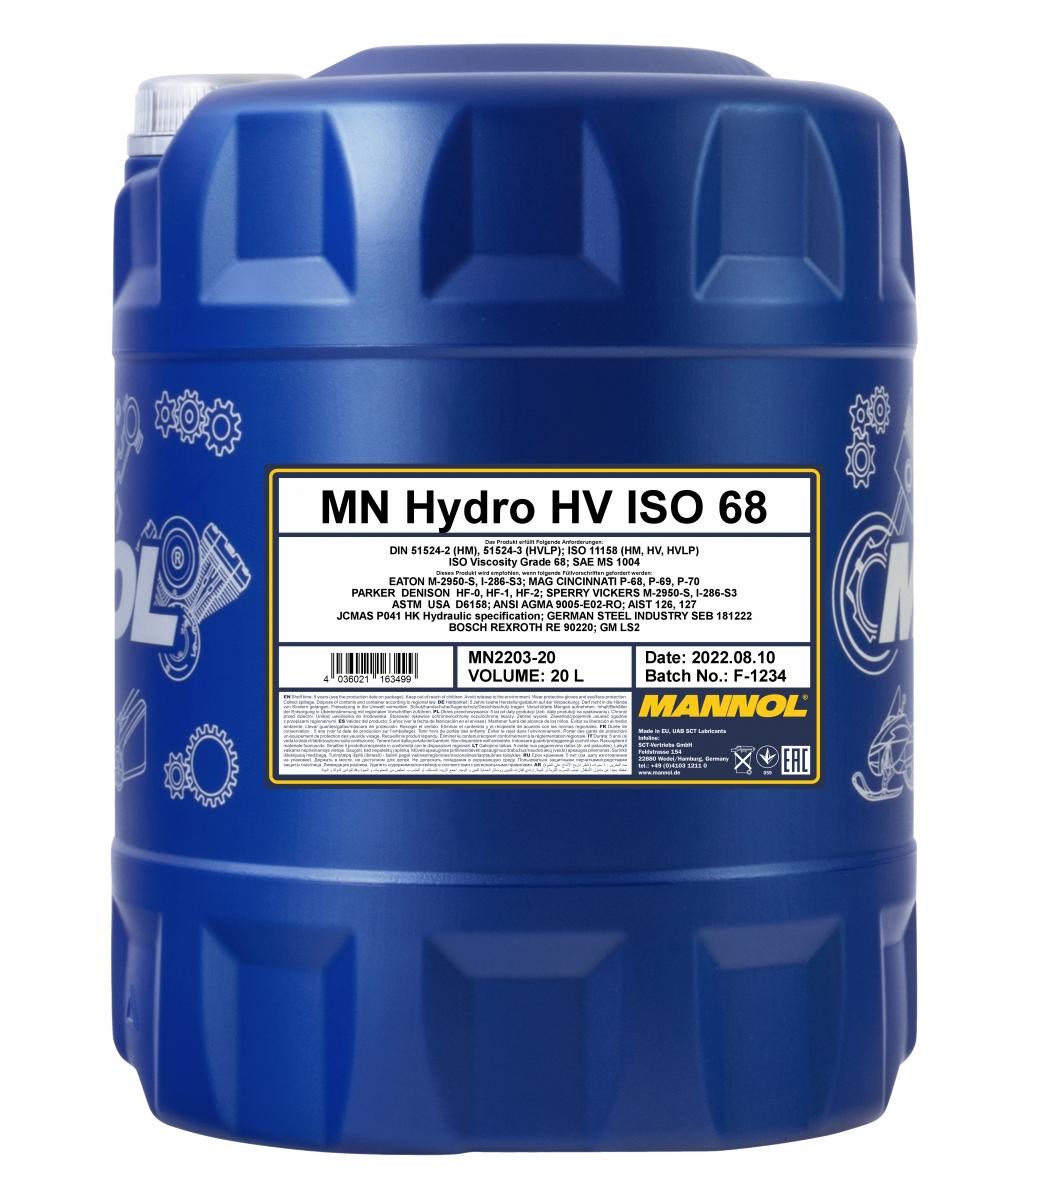 MANNOL HYDRO HV ISO 68 Central Hydraulic Oil MN2203-20 buy